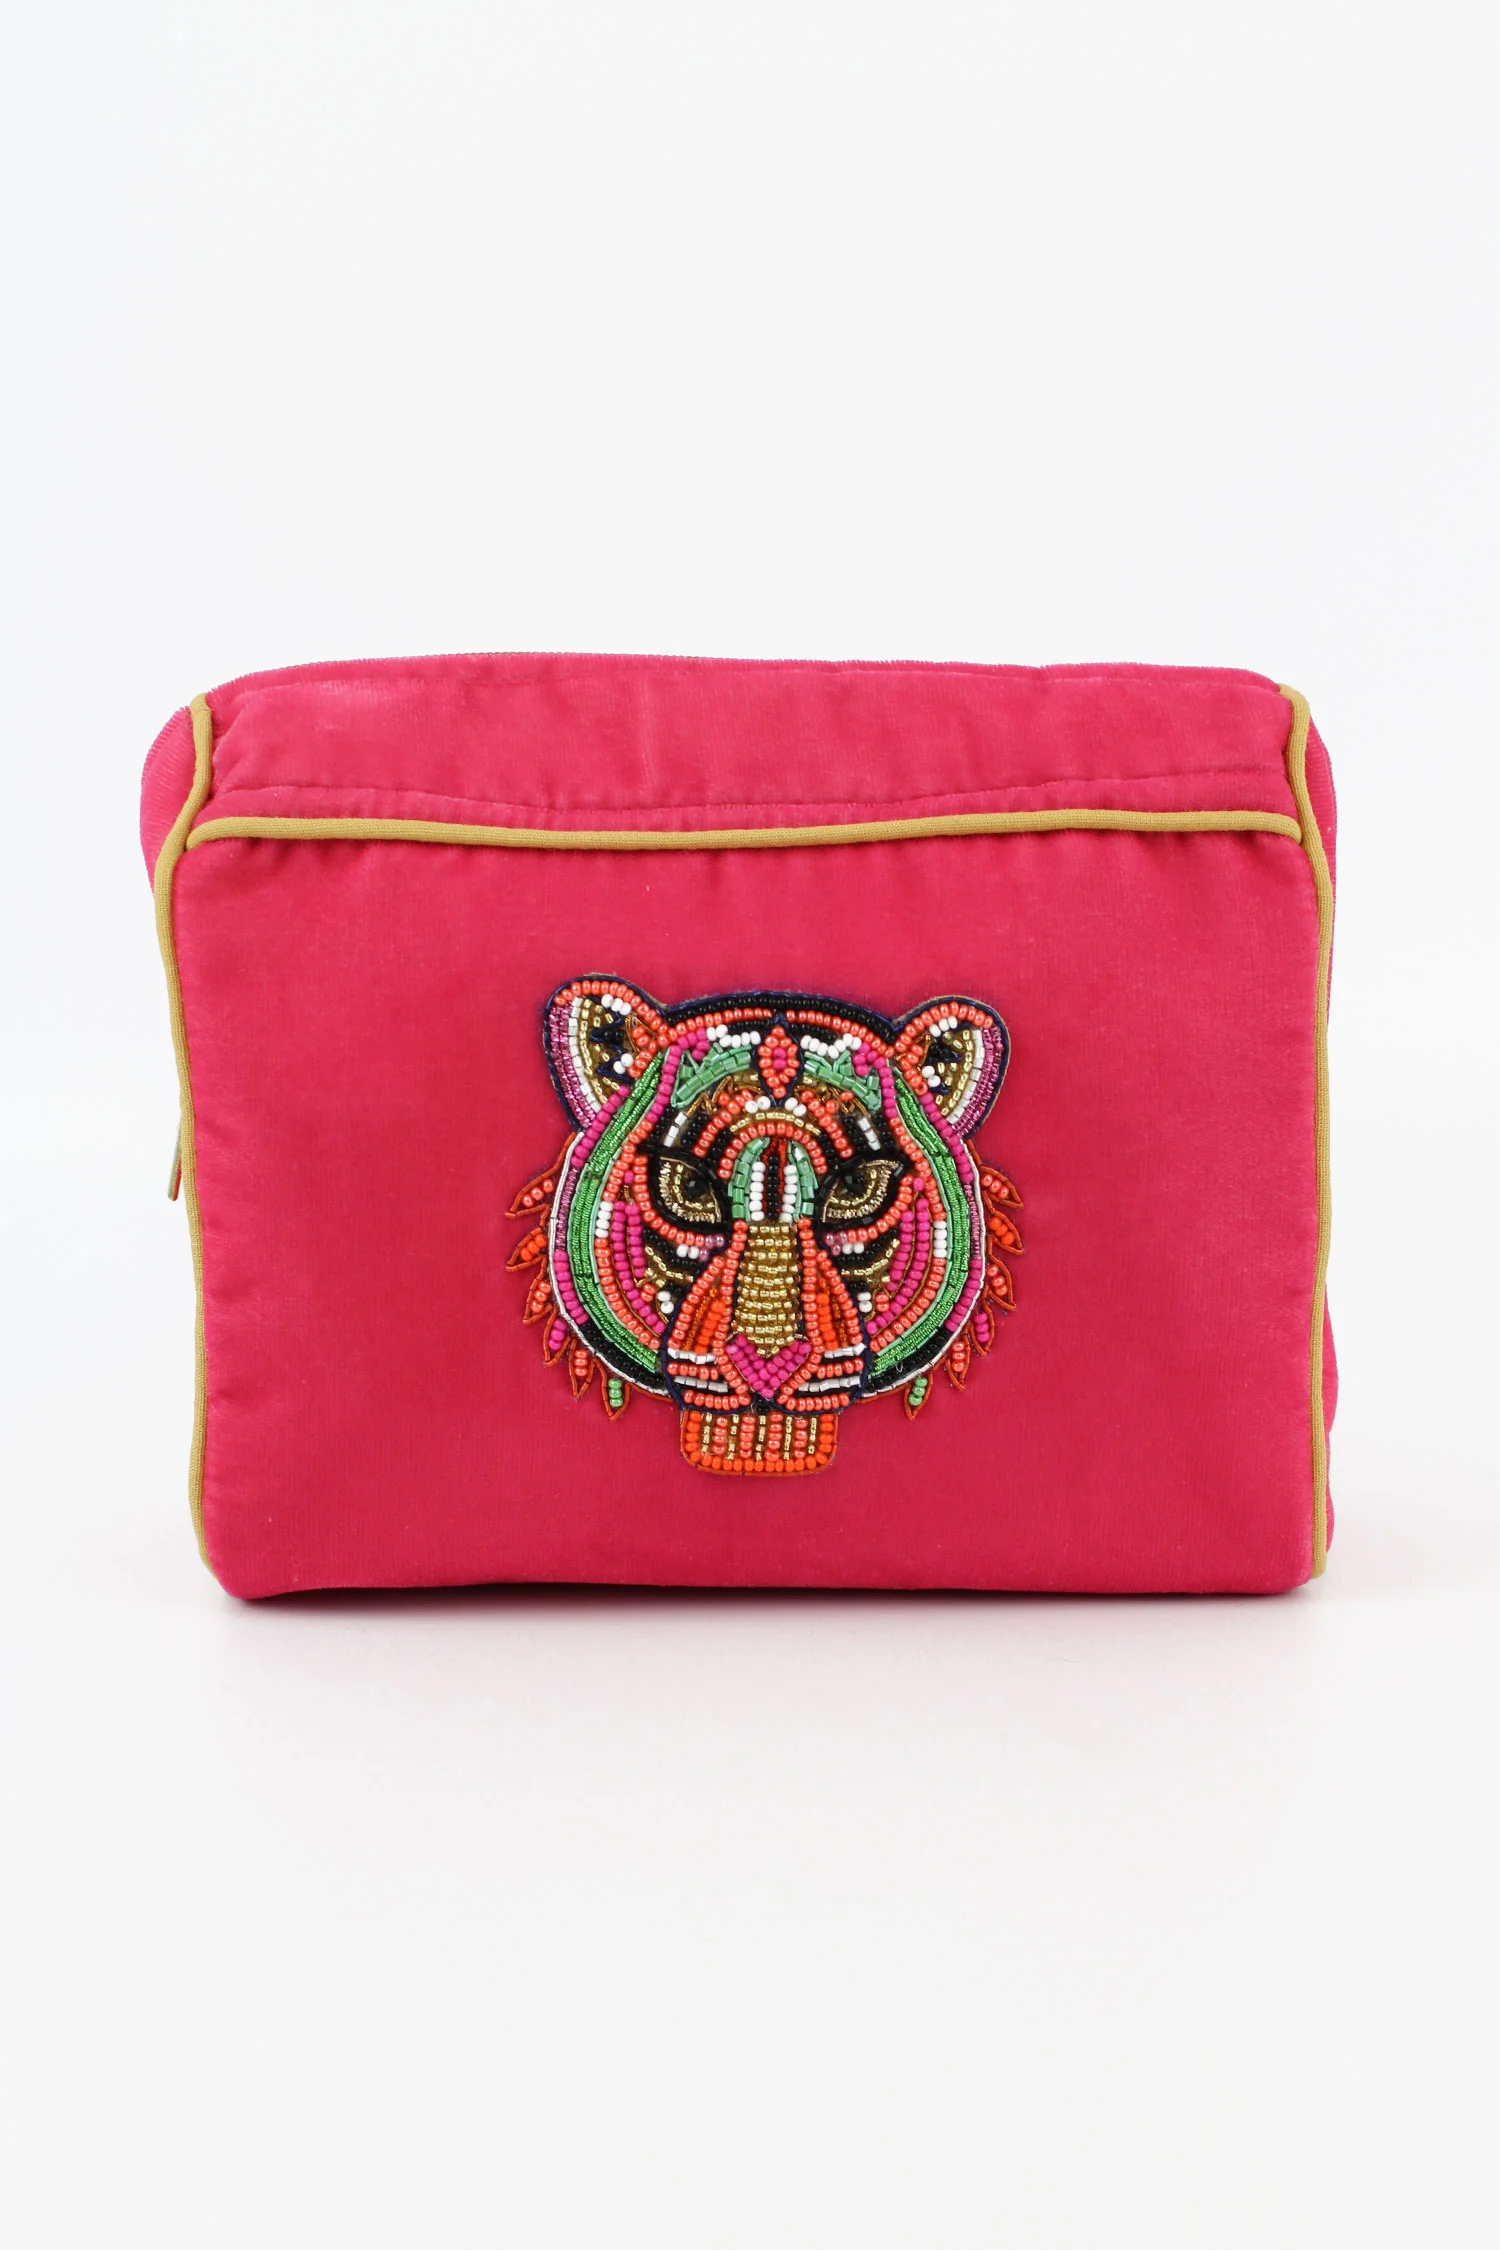 Tiger Pink Make-up Bag